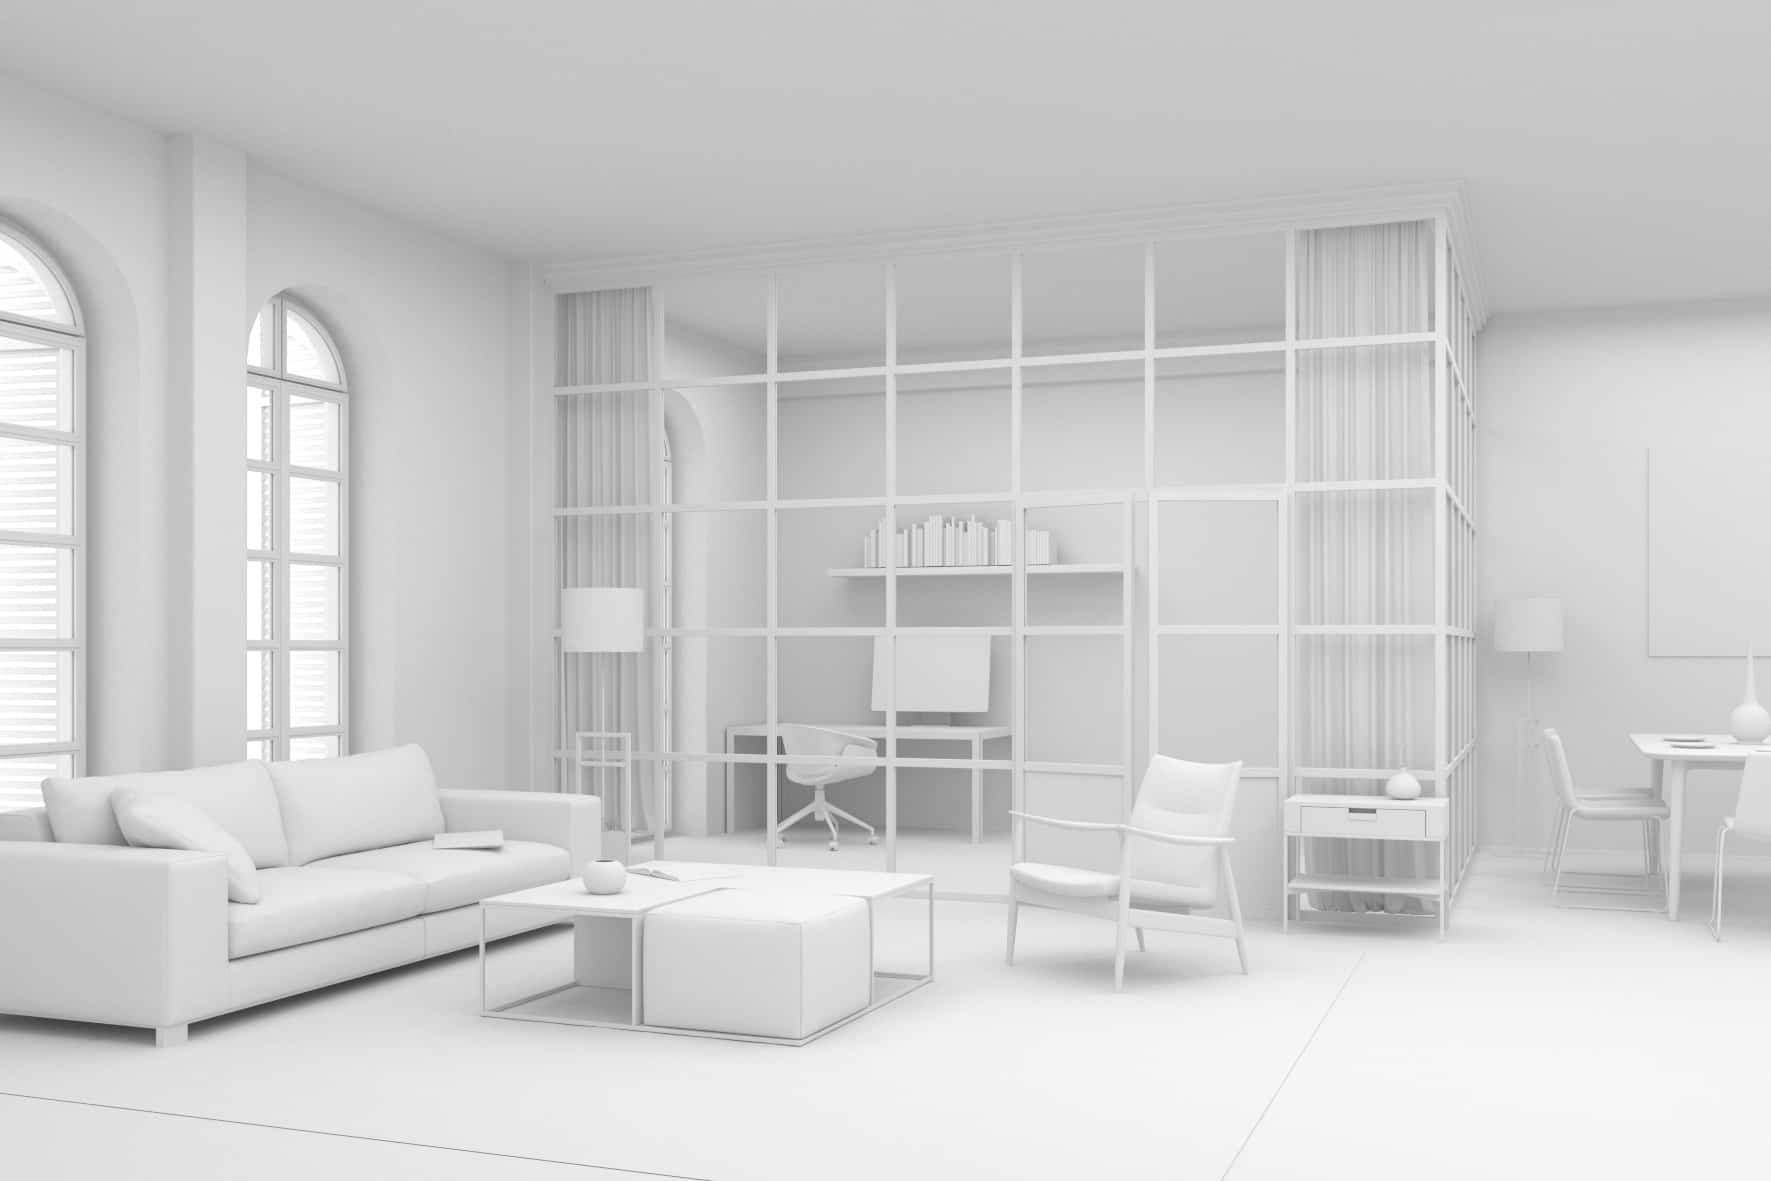 Unbearbeitete Ansicht | Alt­bau Wohnzimmer | 3D-Visualisierung, Architecture, Campaign, Interieur | Full CGI:  Entwurf, Modelling , Beleuchtung, Rendering